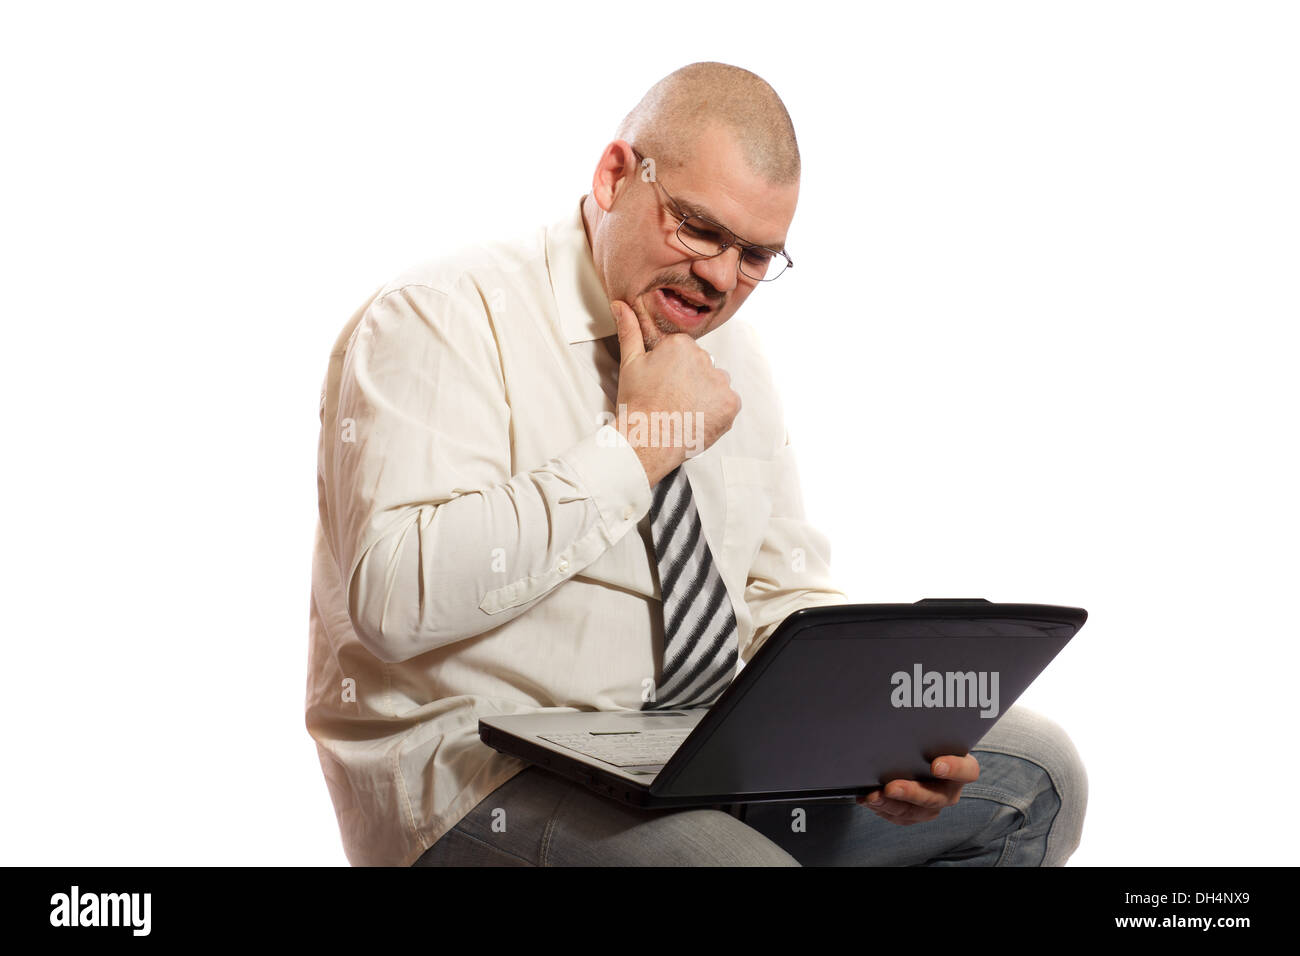 L'homme inquiet en regardant son ordinateur sur un fond blanc Banque D'Images